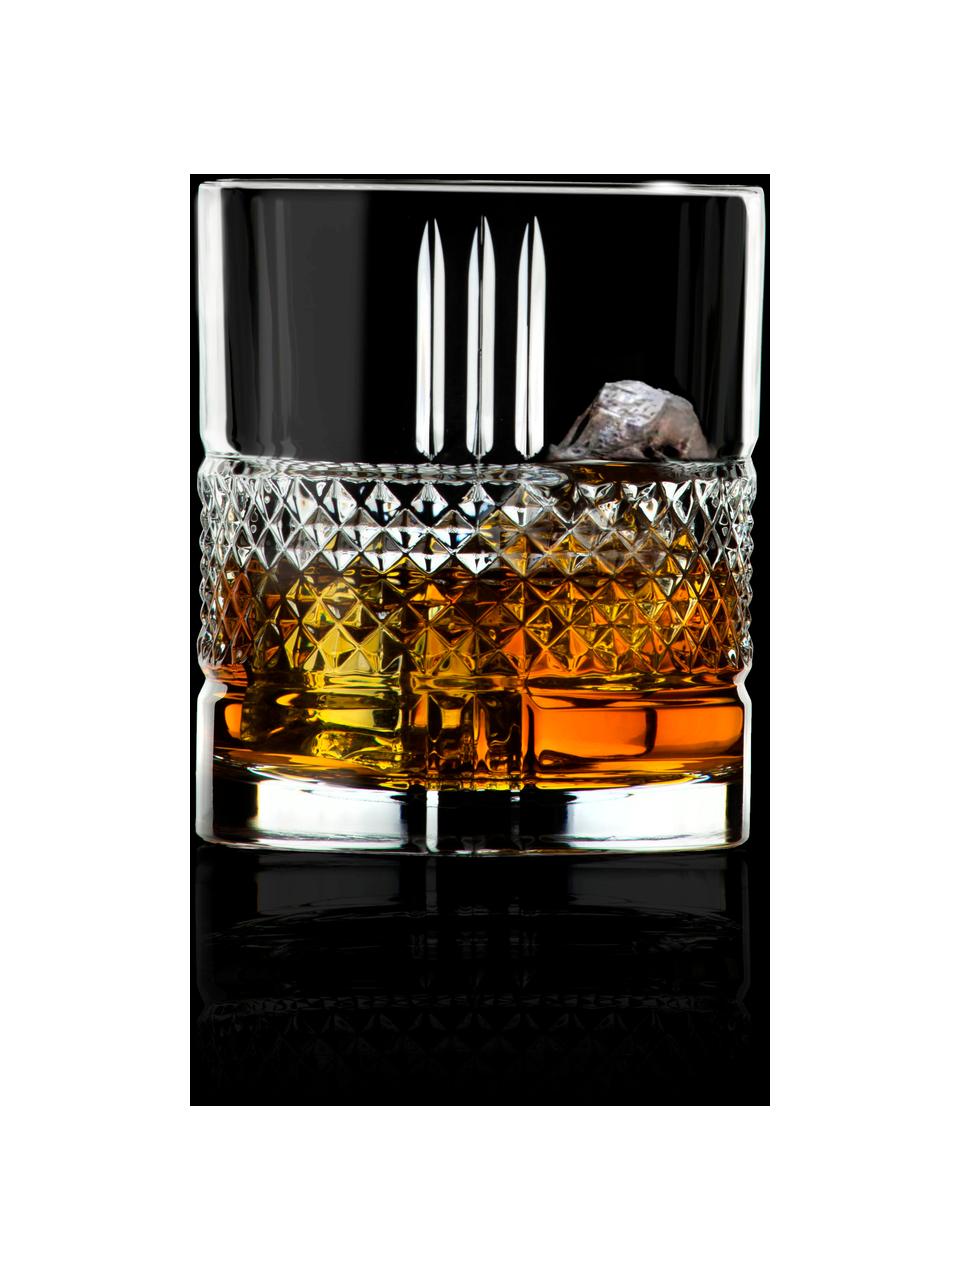 Bicchieri long drink in cristallo con rilievo Brillante 6 pz, Cristallo, Trasparente, Ø 8 x Alt. 9 cm, 340 ml